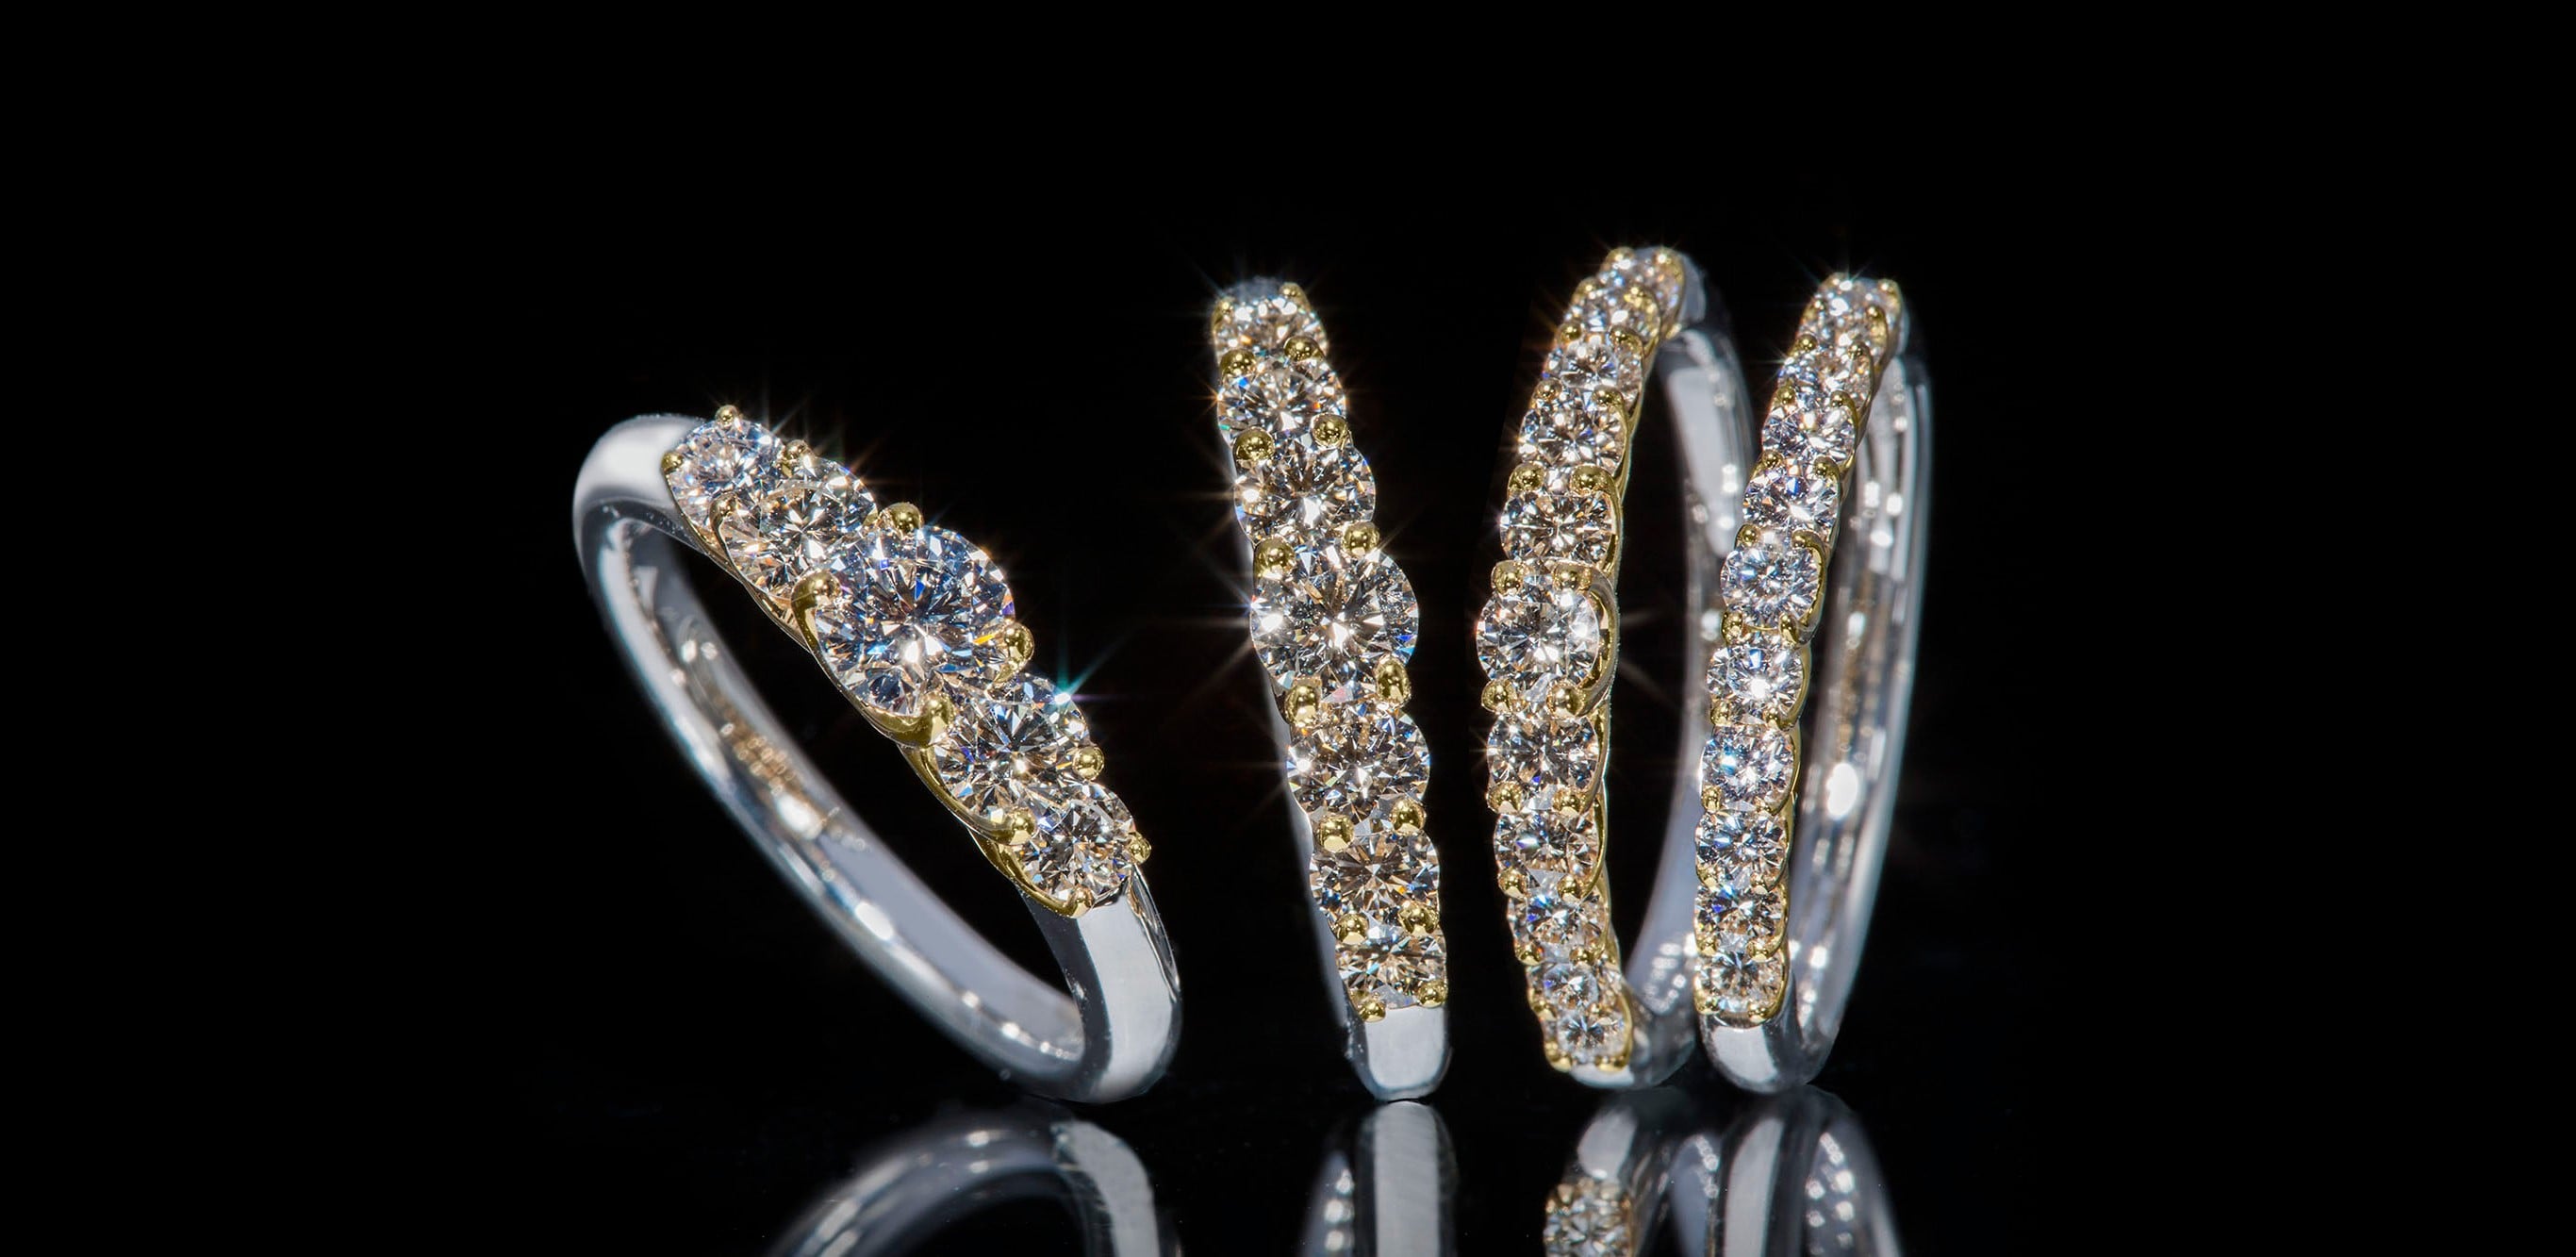 鑽石「懸浮」在鉑金和18K黃金中間的婚戒。鑽石散發出的無色透明光芒連成一片，閃耀奪目。